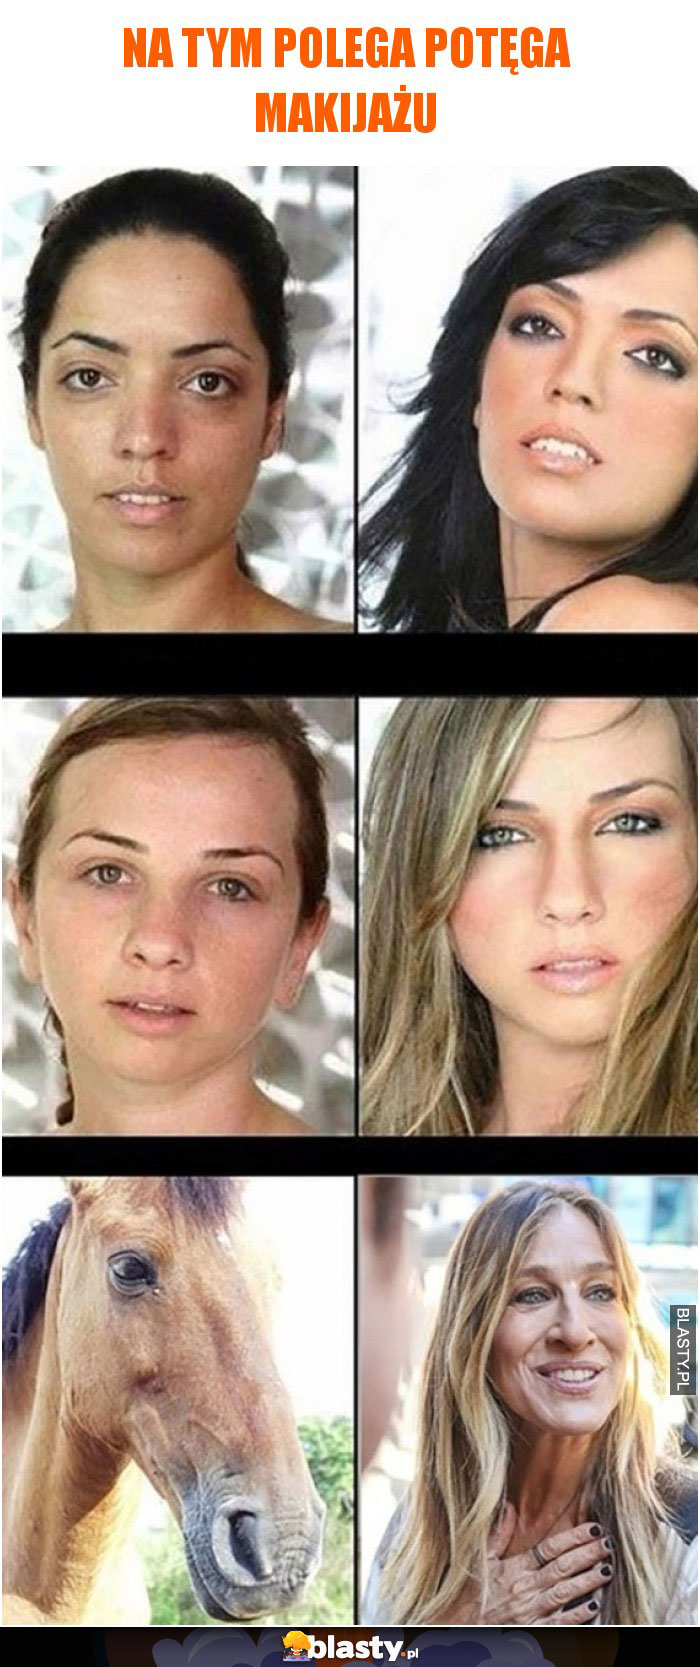 3 zdjęcia pokazujące na czym polega potęga makijażu